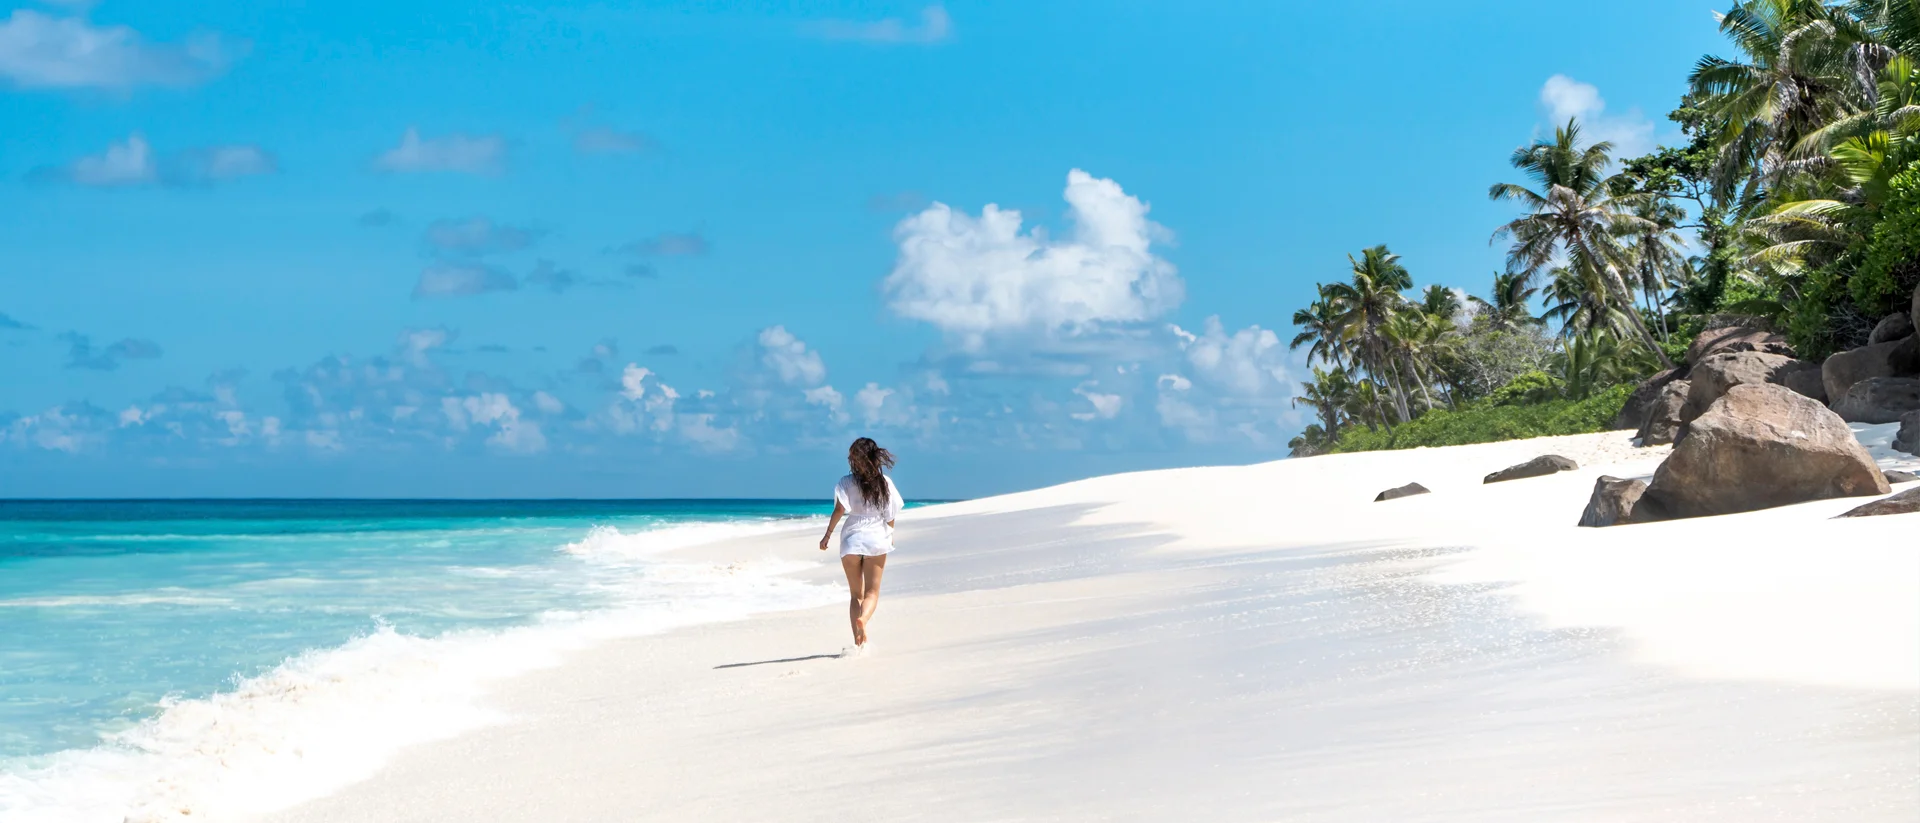 Jeune fille sur une plage de sable blanc lors d'une aventures aux Seychelles